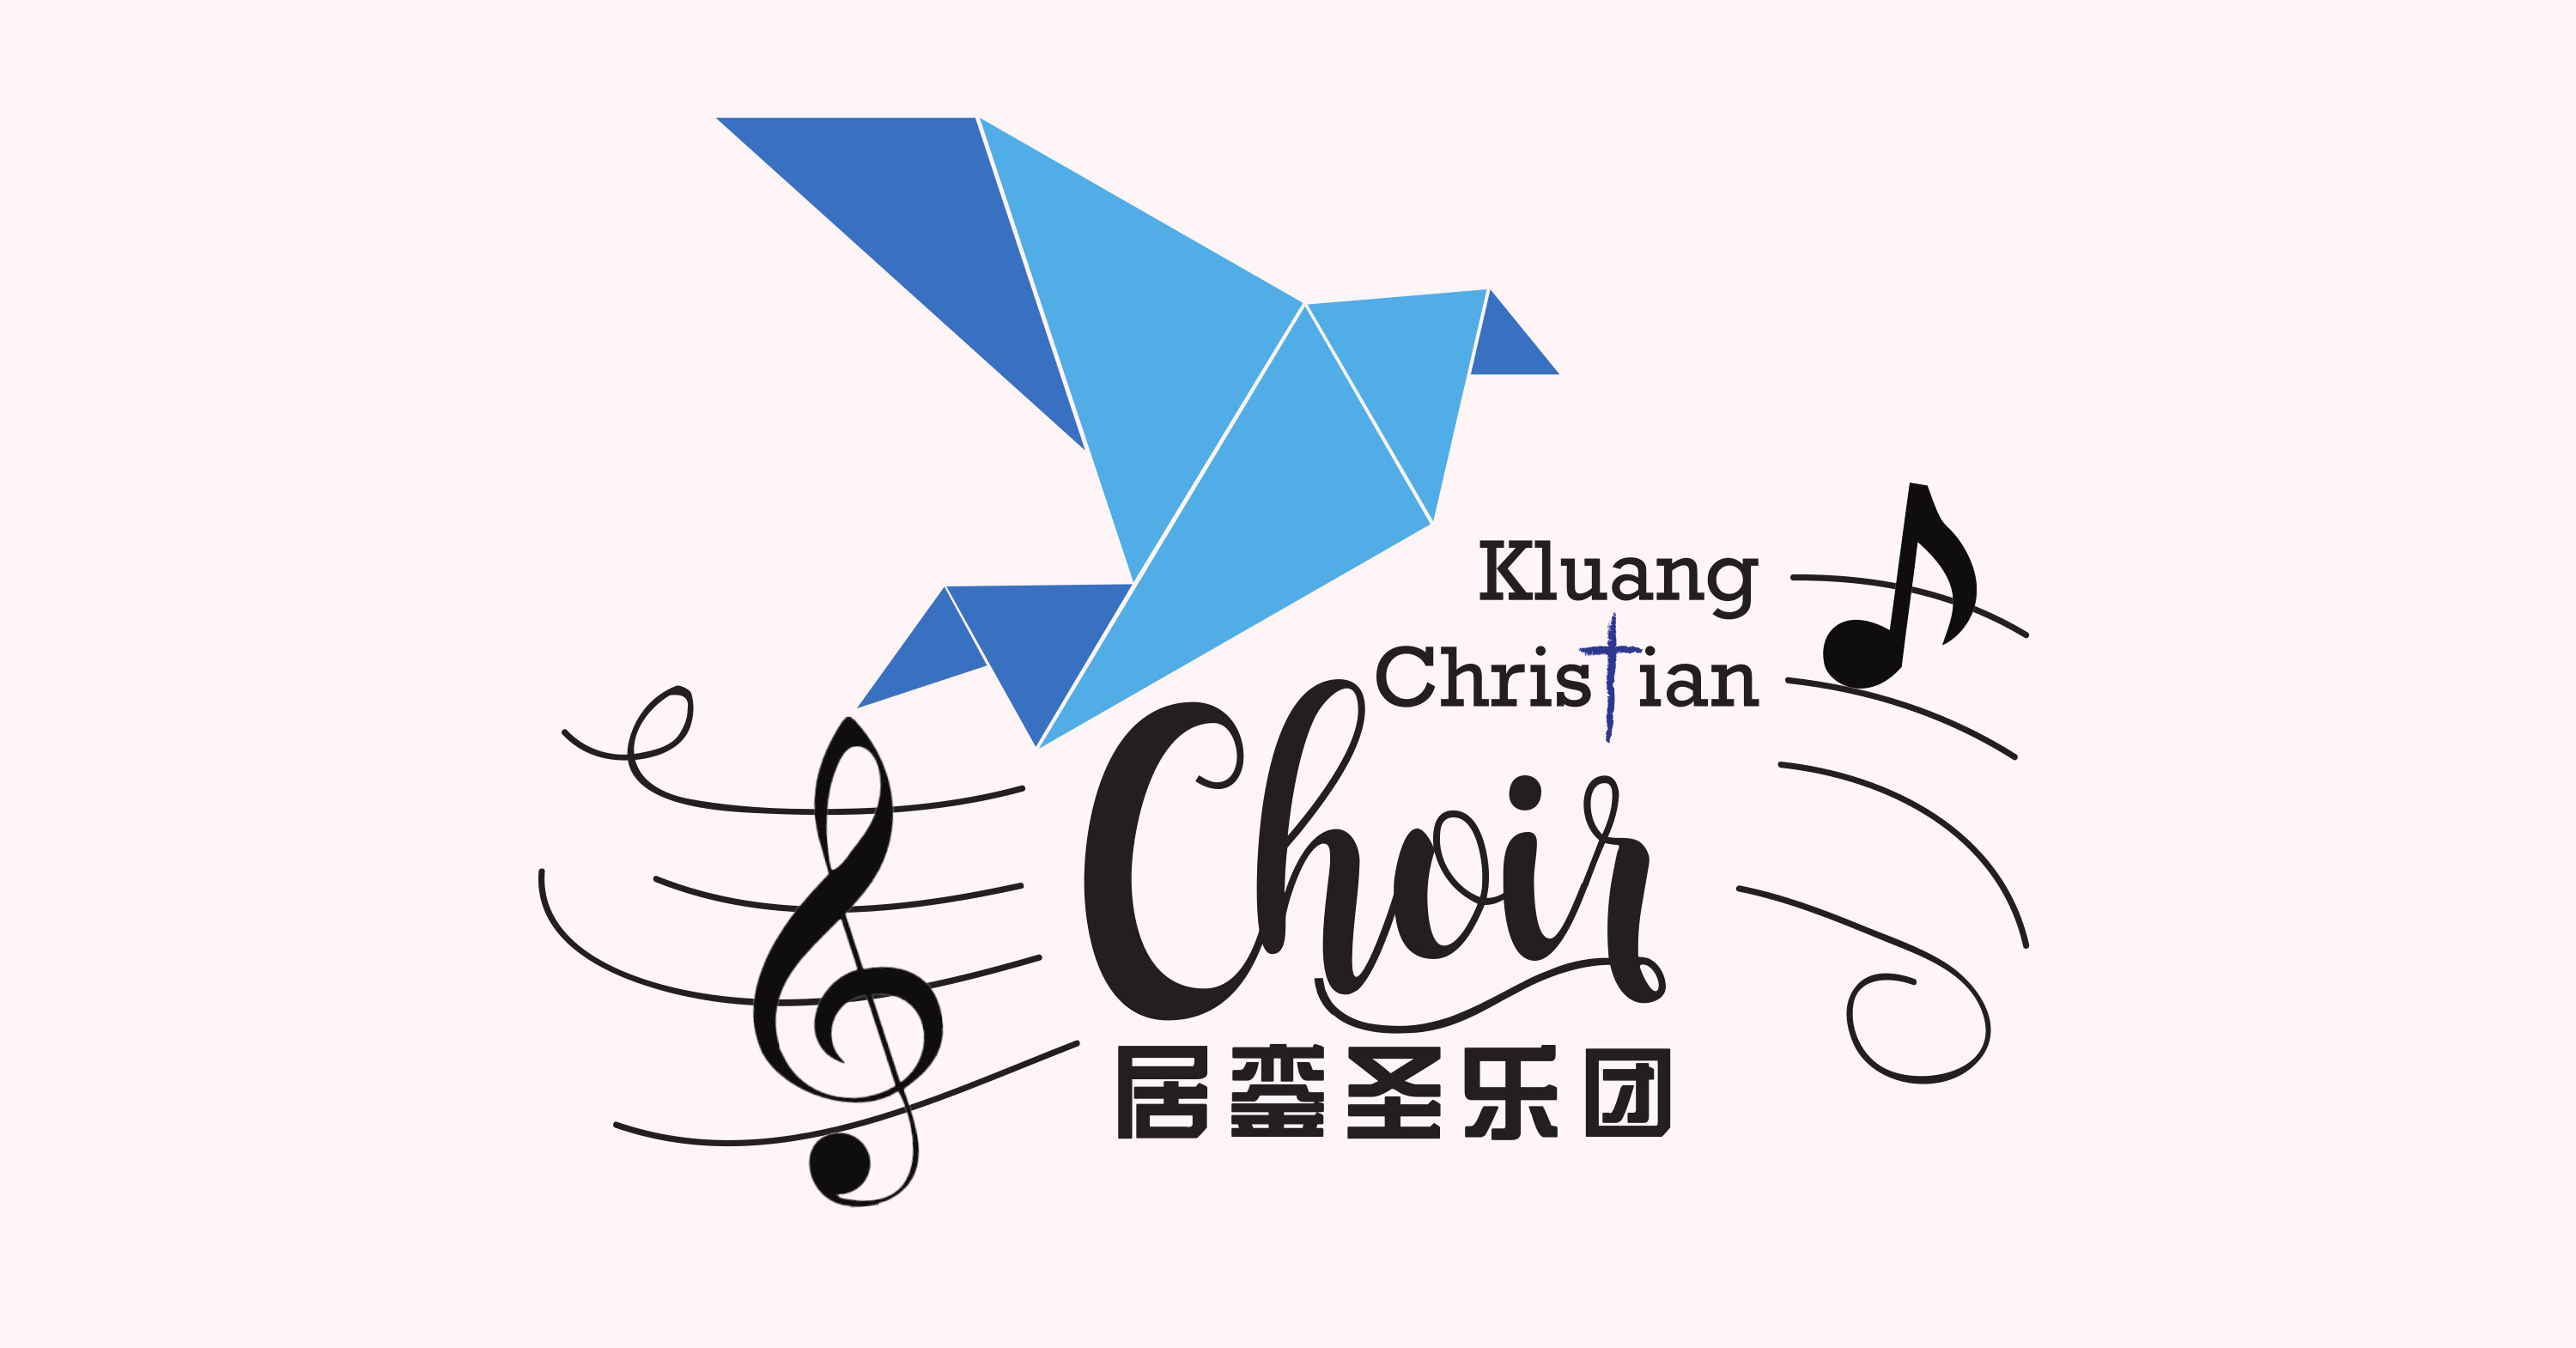 居銮圣乐团 Kluang Christian Choir 居銮 柔佛 马来西亚 柔佛圣乐服事 圣乐训练 声乐合唱训练 提高各教会的礼拜与圣乐水准 A00